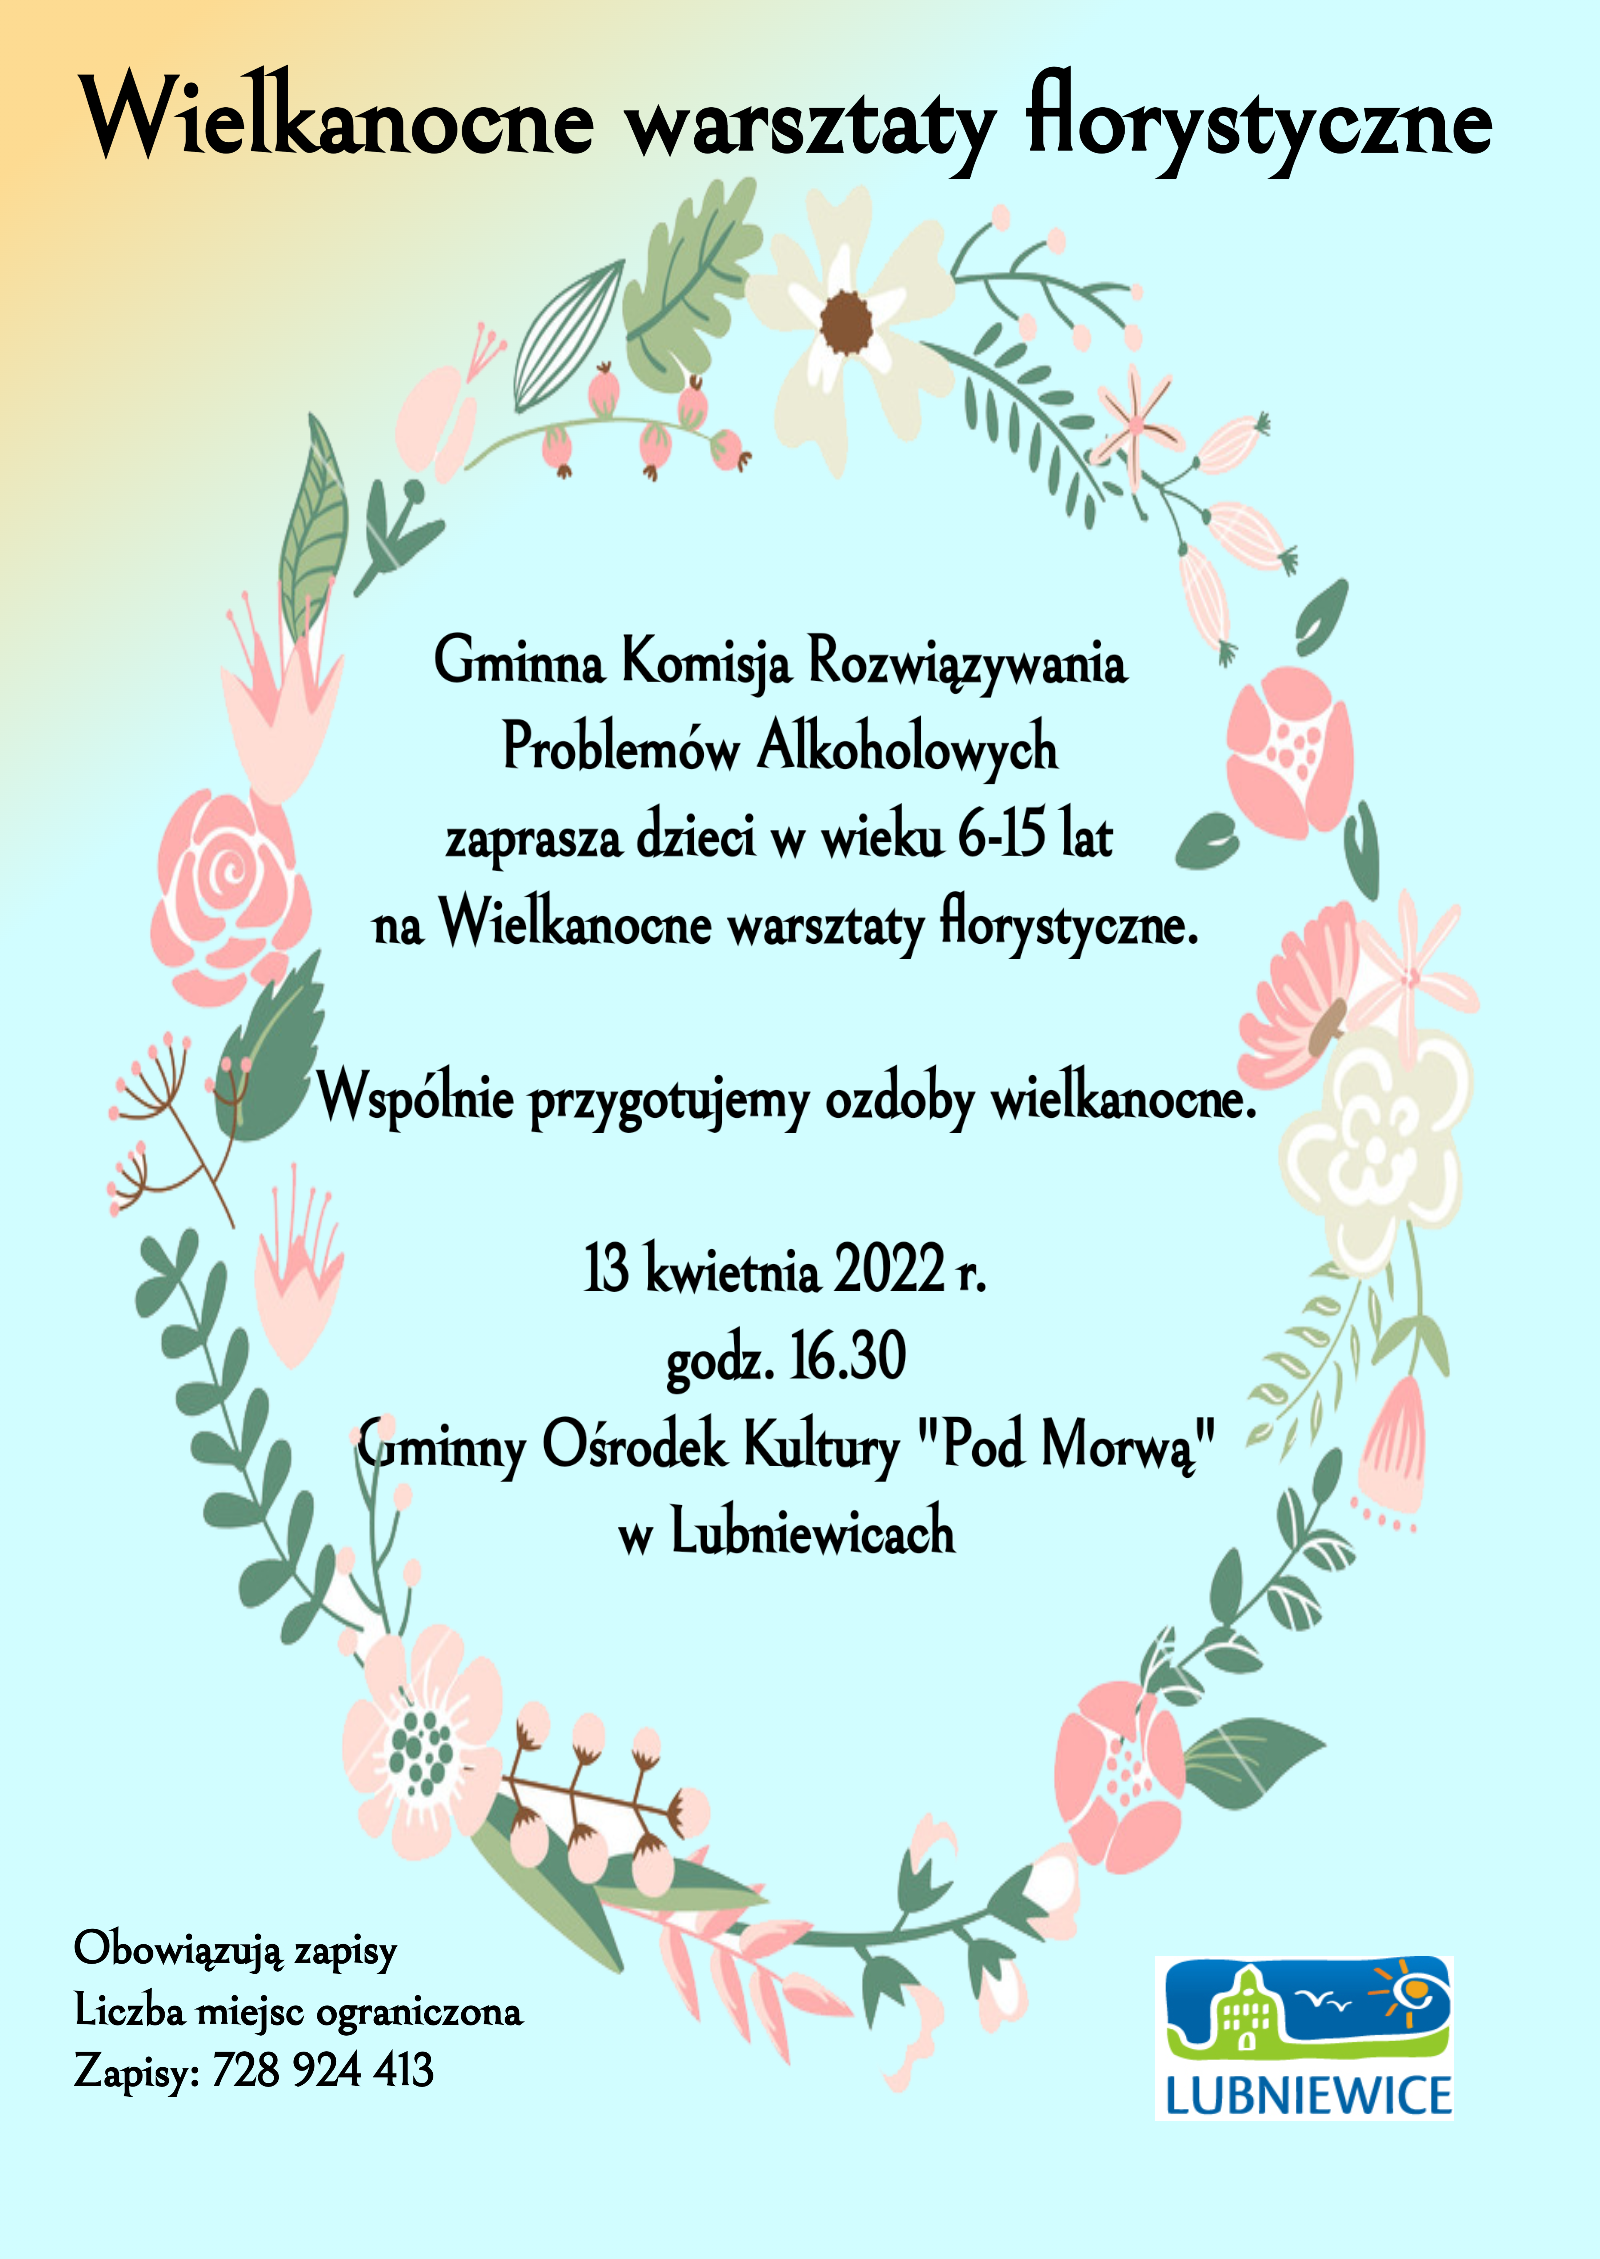 warsztaty-florystyczne-gmina-lubniewice-2022-plakat